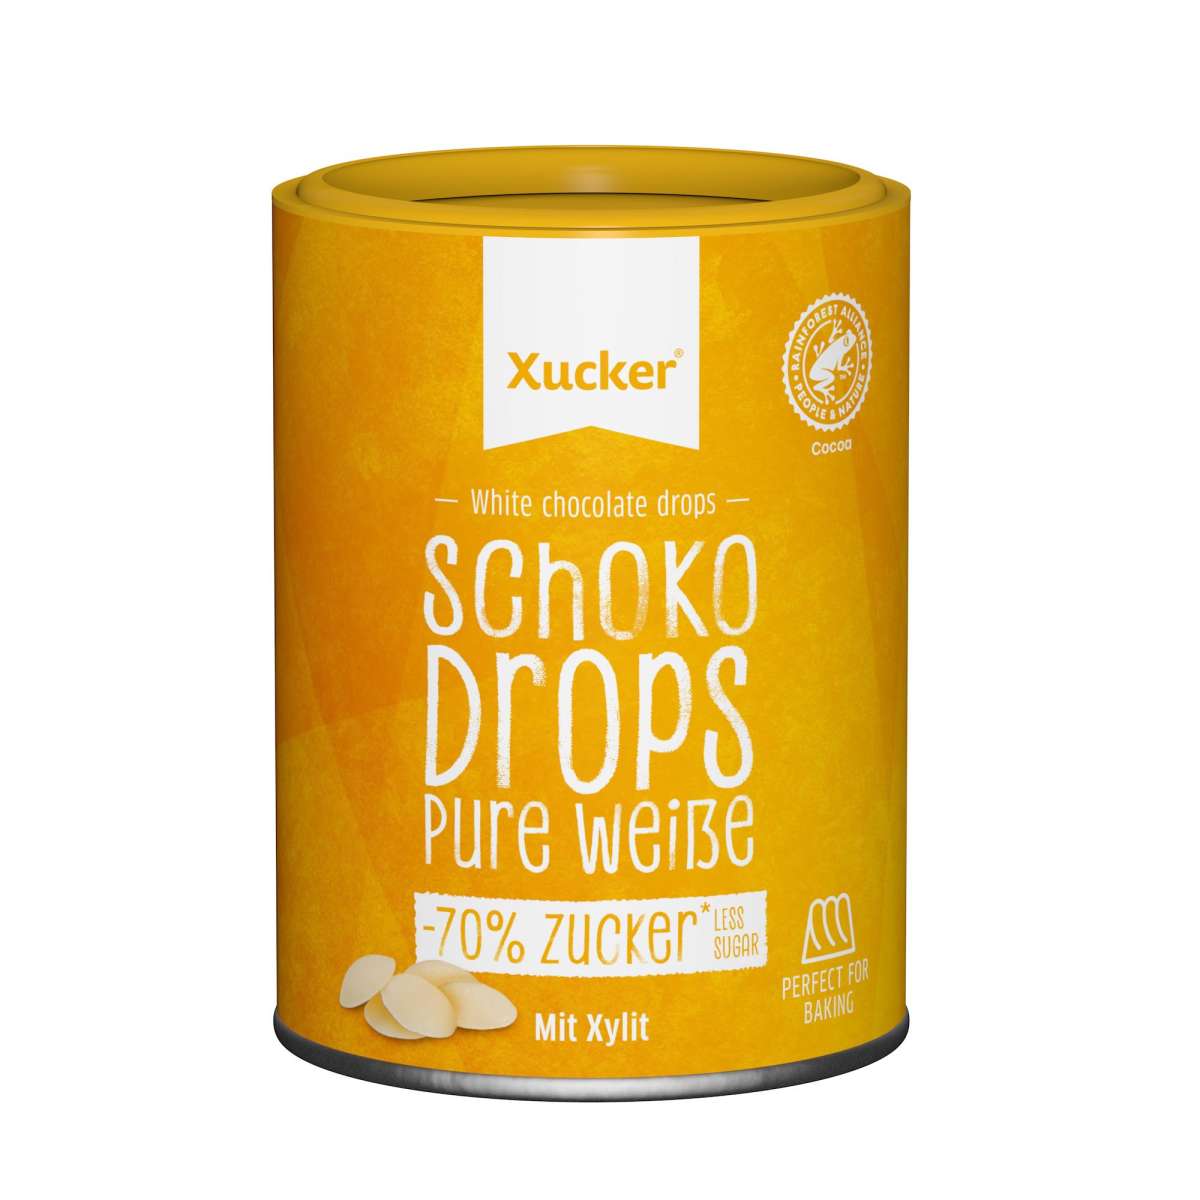 Xucker Weiße Schoko-Drops mit Xylit - 200g